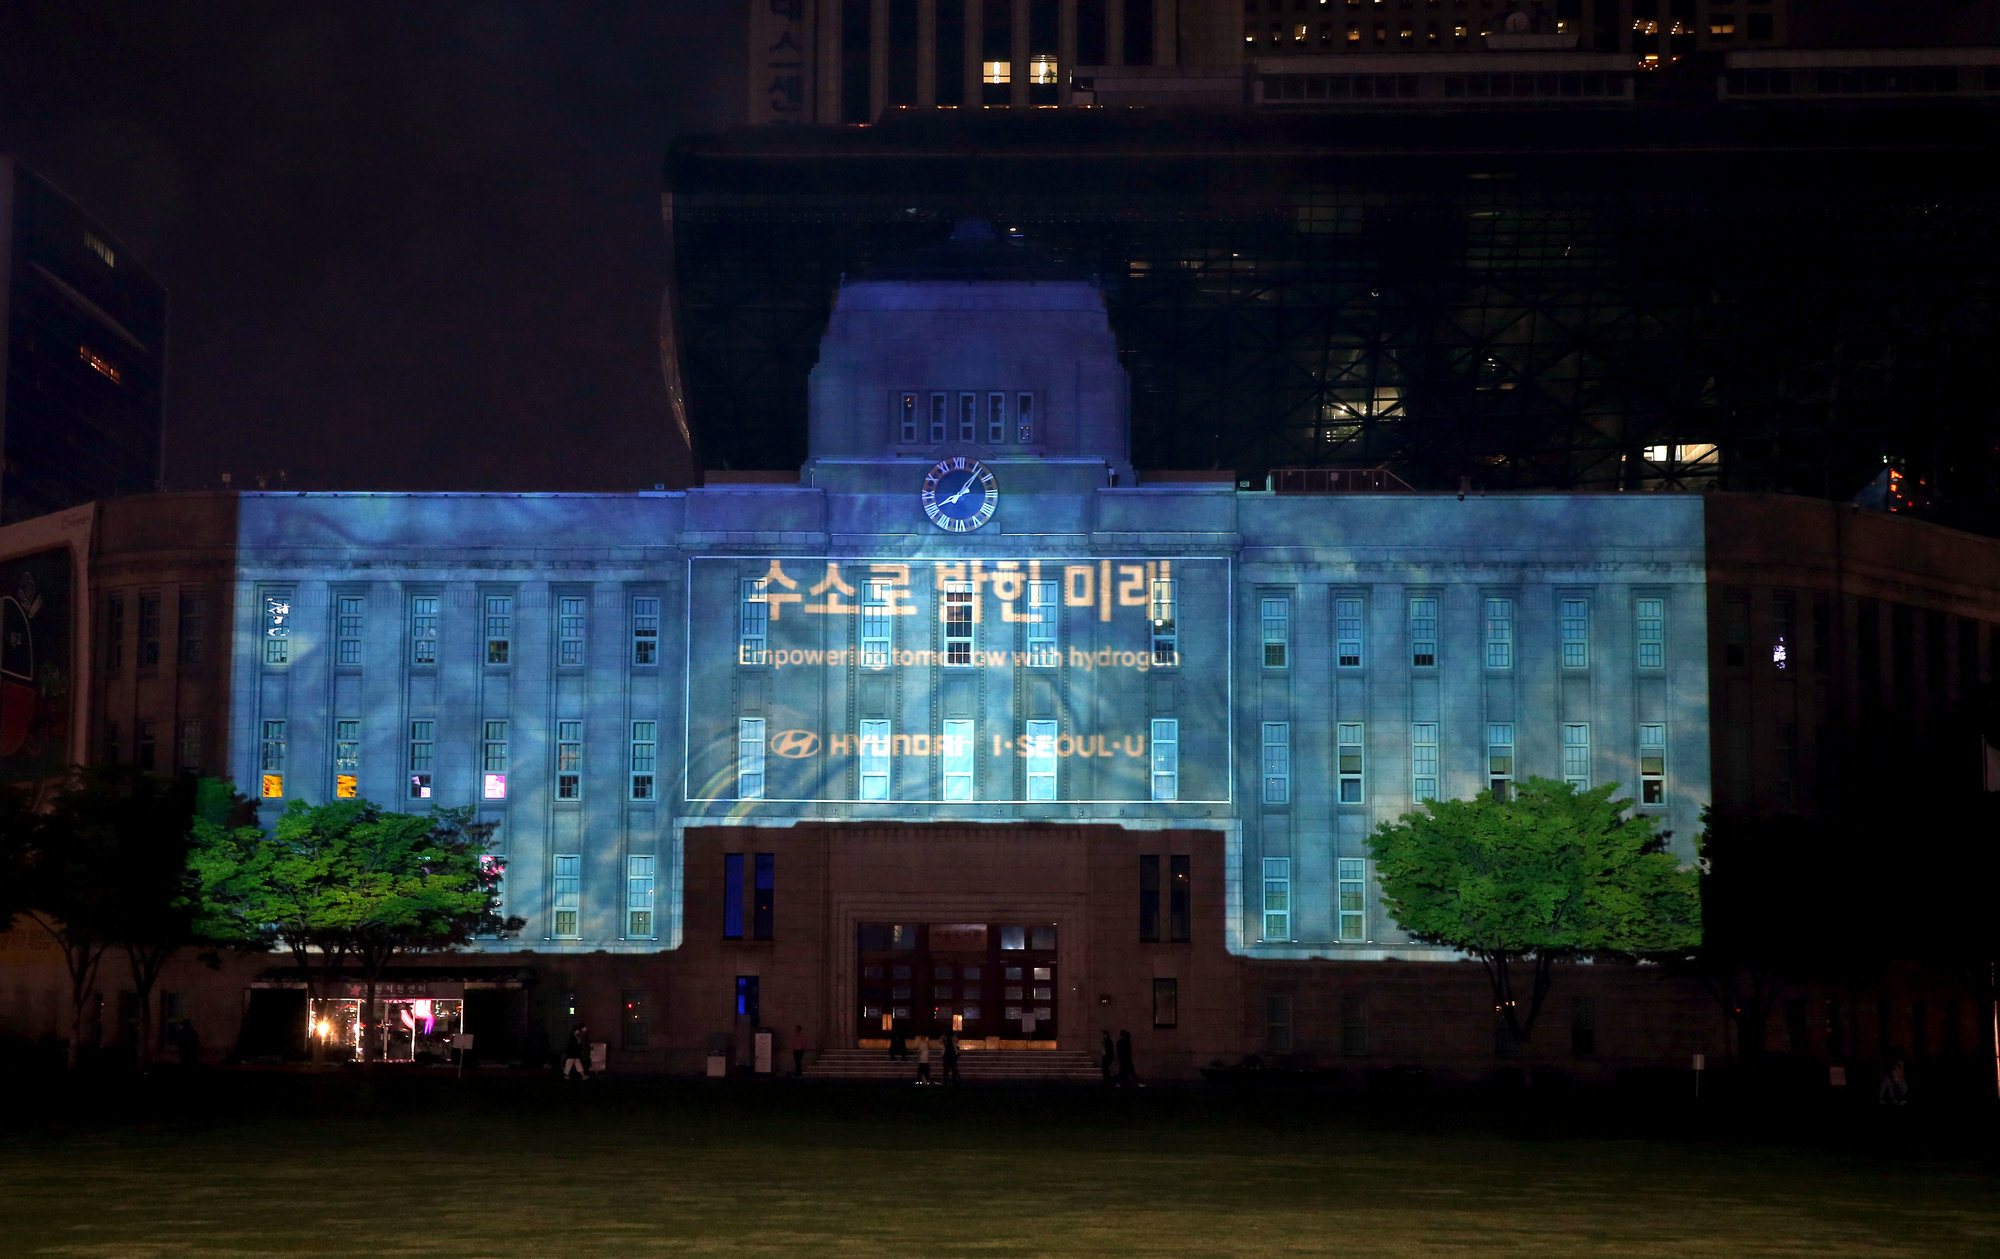 Projekce, která byla při oslavách Dne Země 2019 promítána na metropolitní knihovnu v Soulu, byla napájena pěti vodíkovými elektromobily Hyundai NEXO.